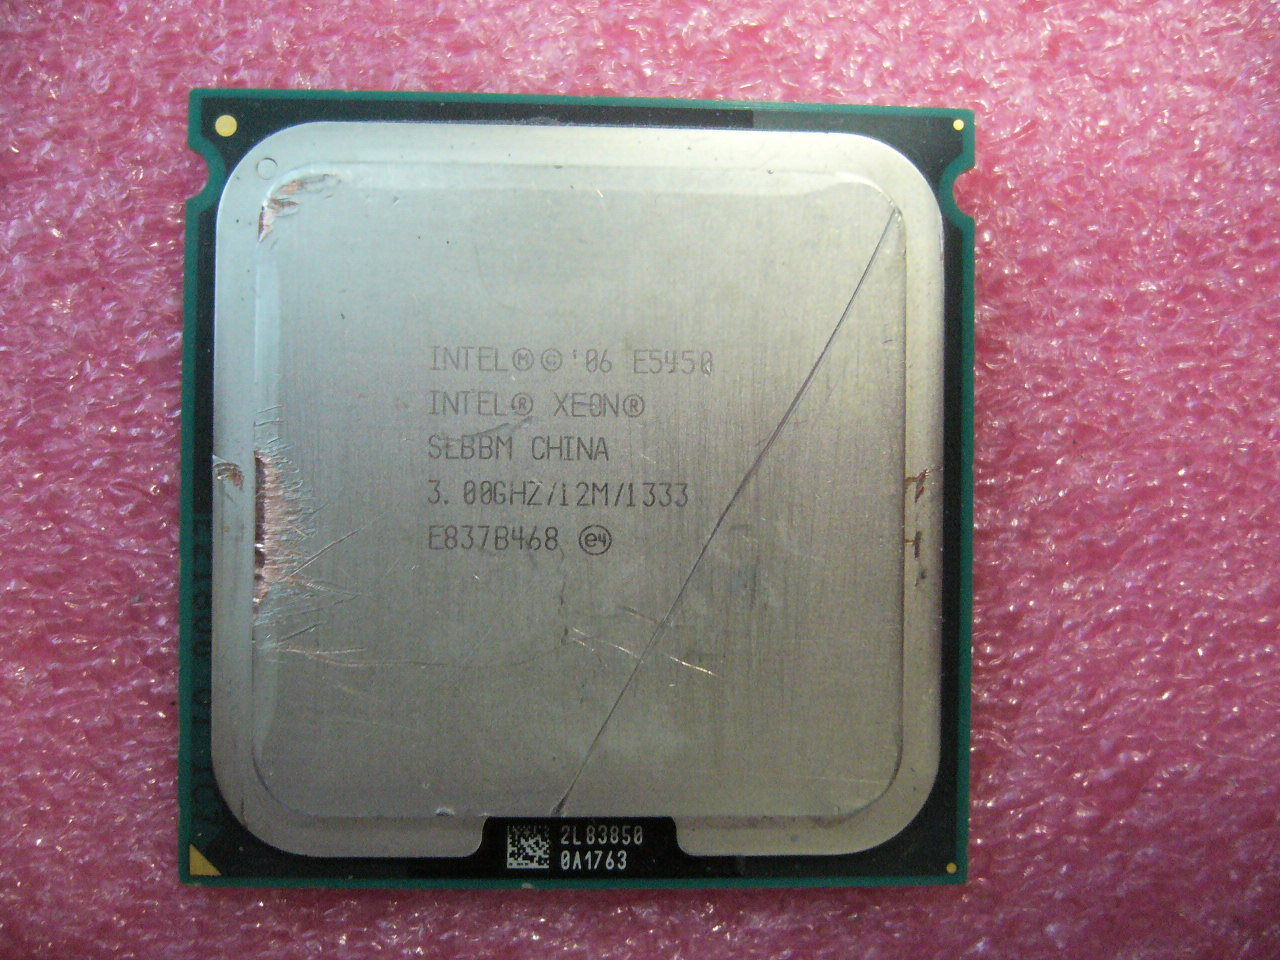 QTY 1x Intel Xeon CPU Quad Core E5450 3.00Ghz/12MB/1333Mhz LGA771 SLBBM